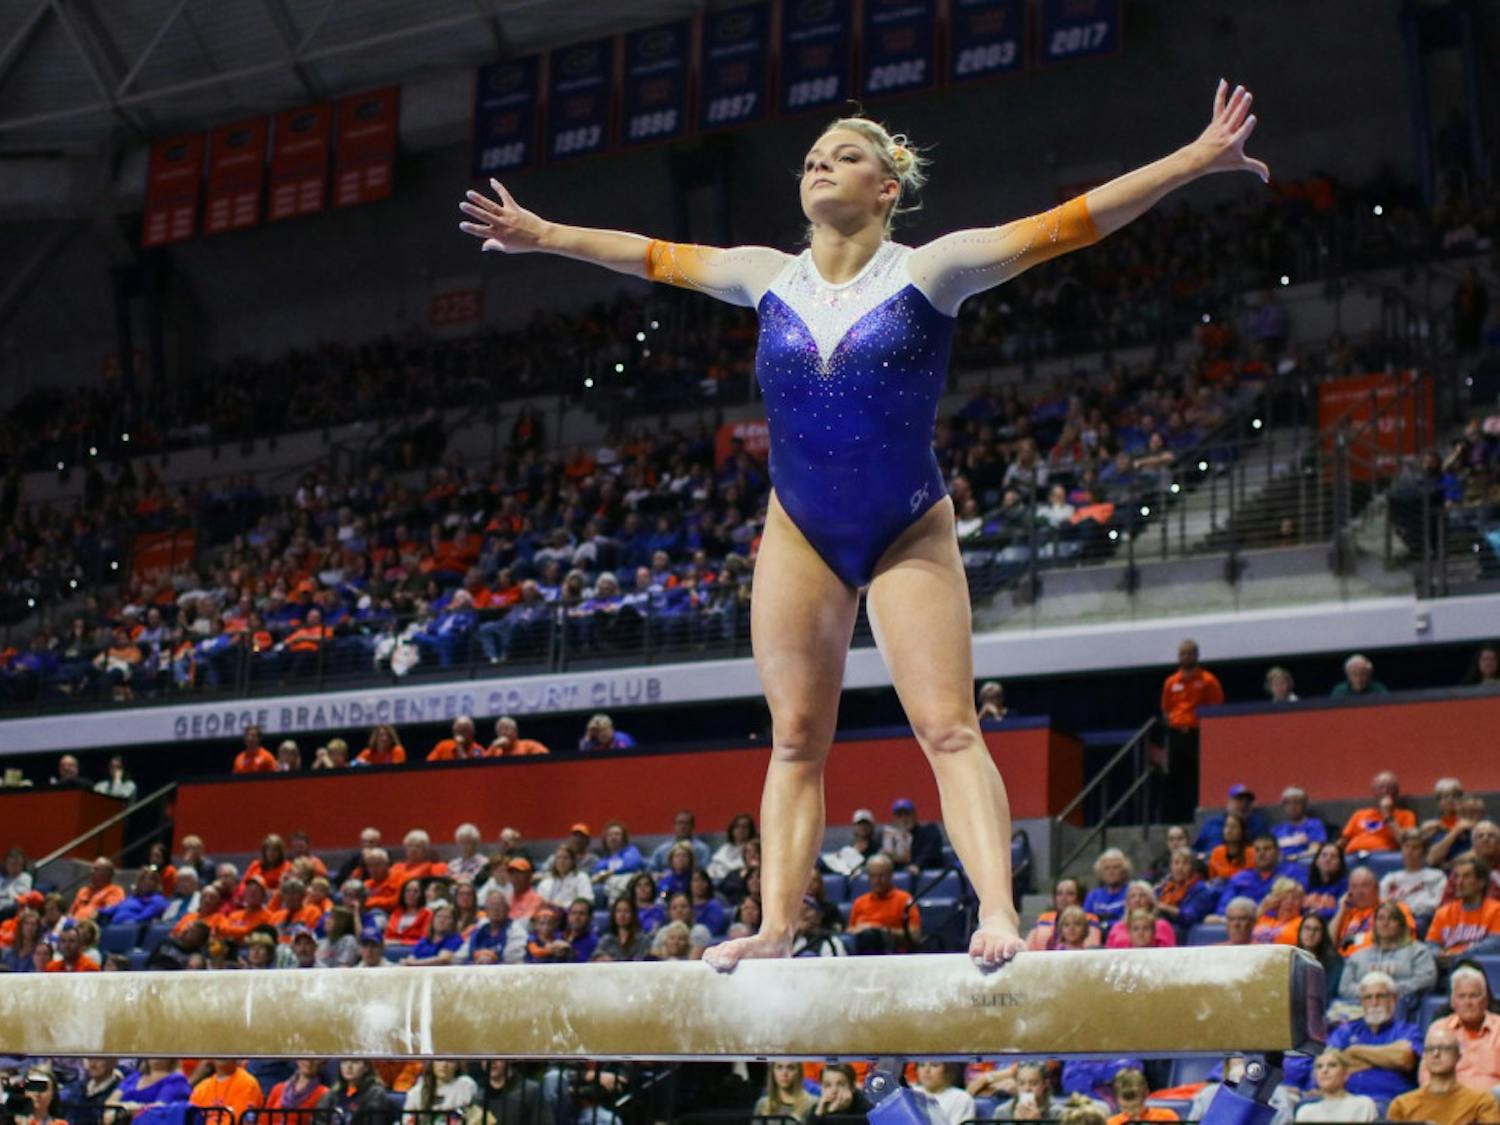 Florida gymnast Alyssa Baumann has two 9.9s against Auburn, including a 9.925 on her floor routine.